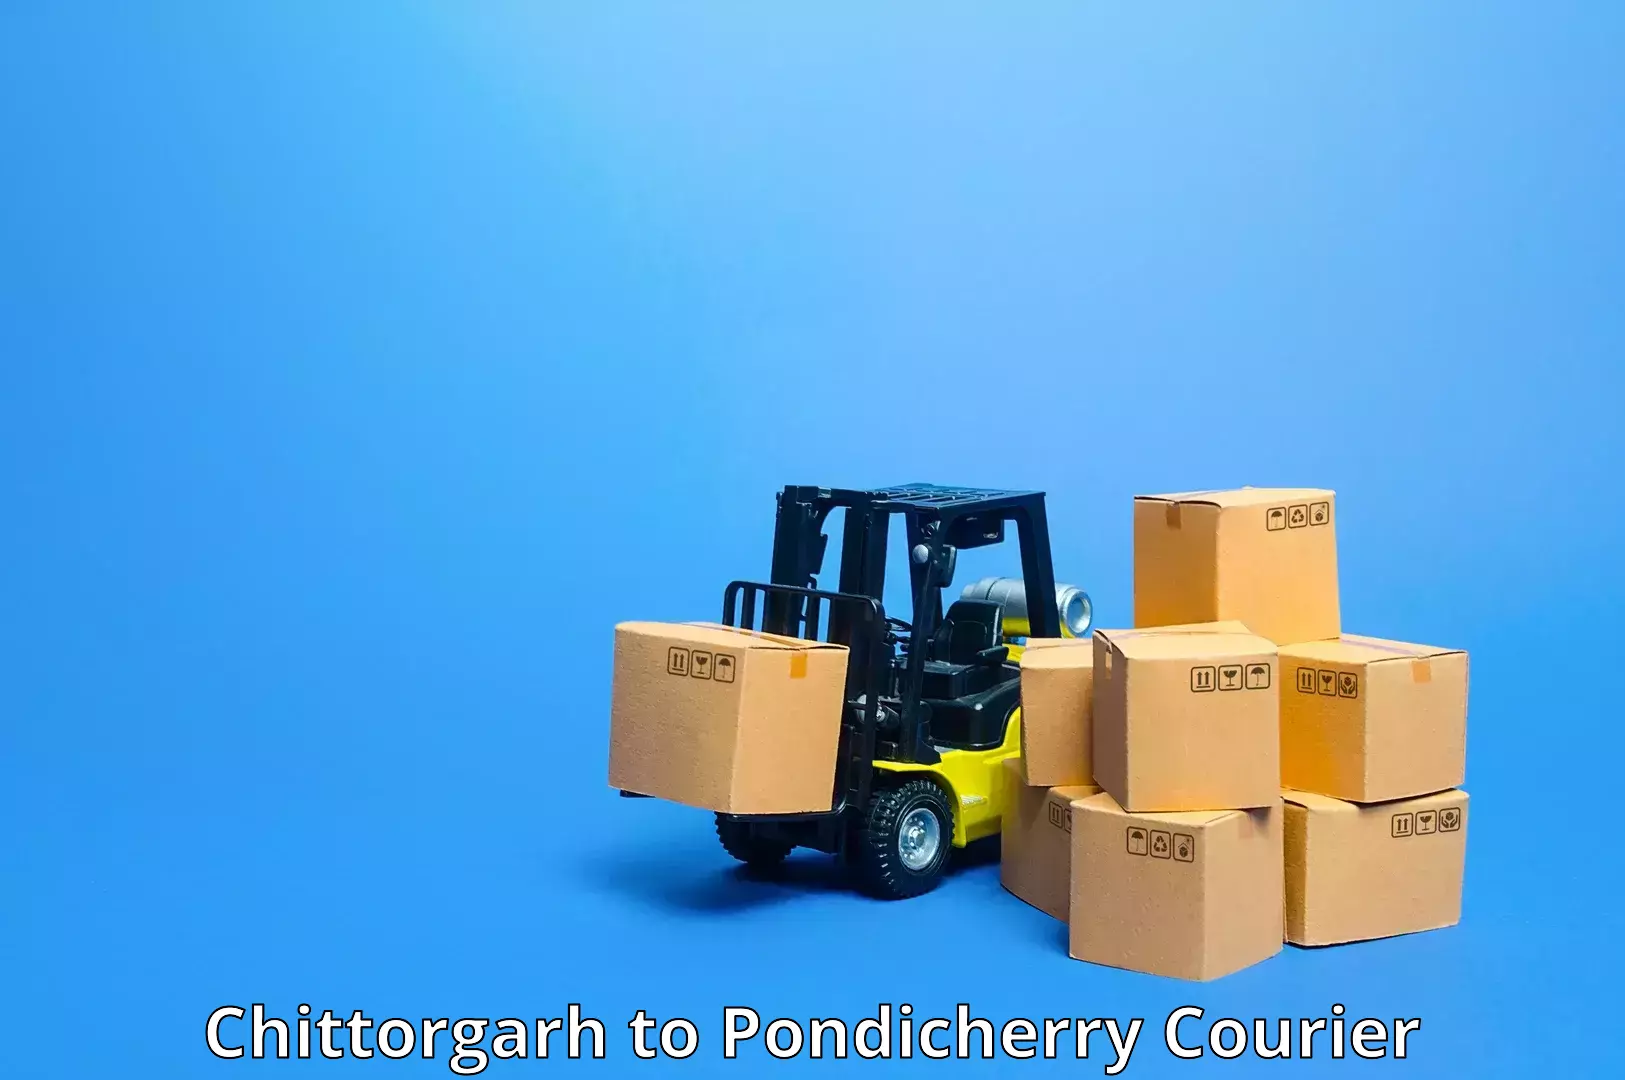 On-call courier service Chittorgarh to Pondicherry